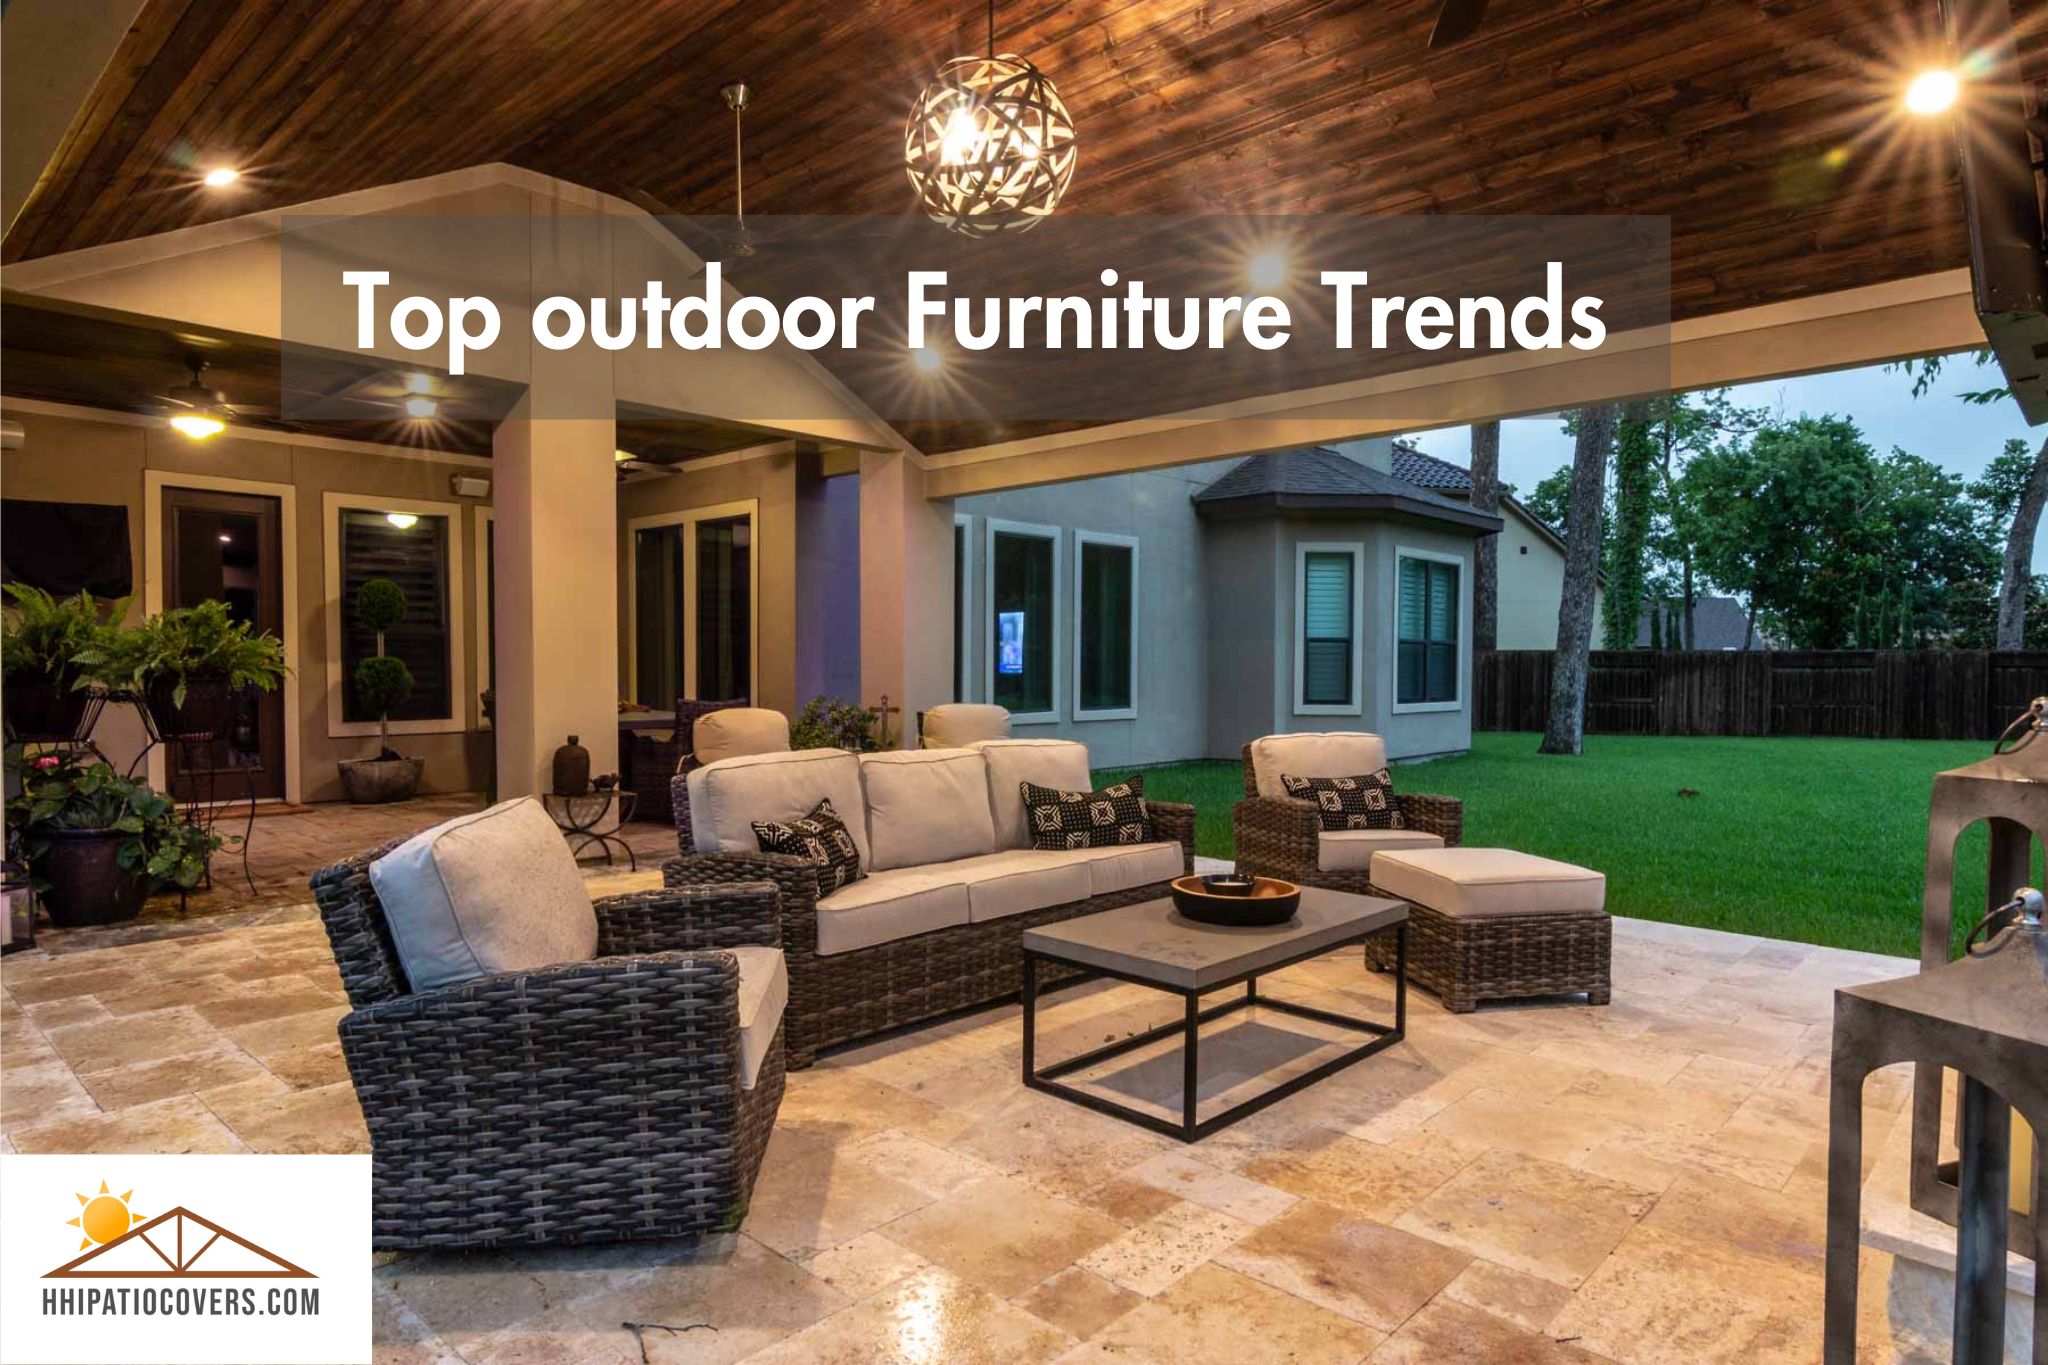 Top outdoor furniture trends